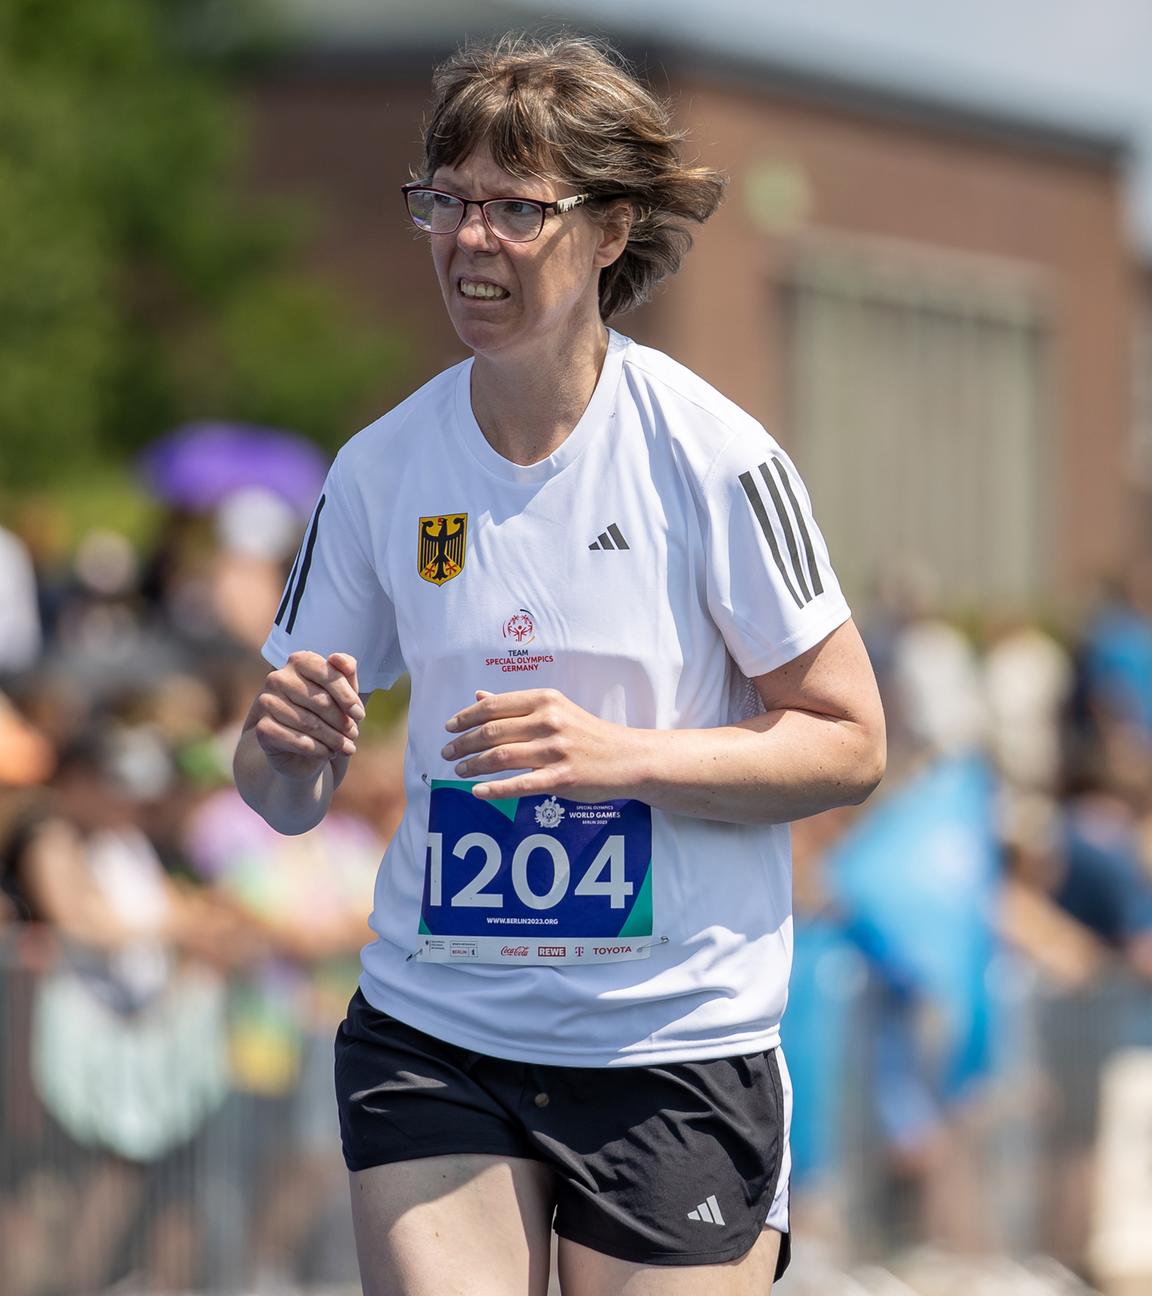 Annika Meissner aus Hessen läuft auf der Bahn im 1500 m Lauf